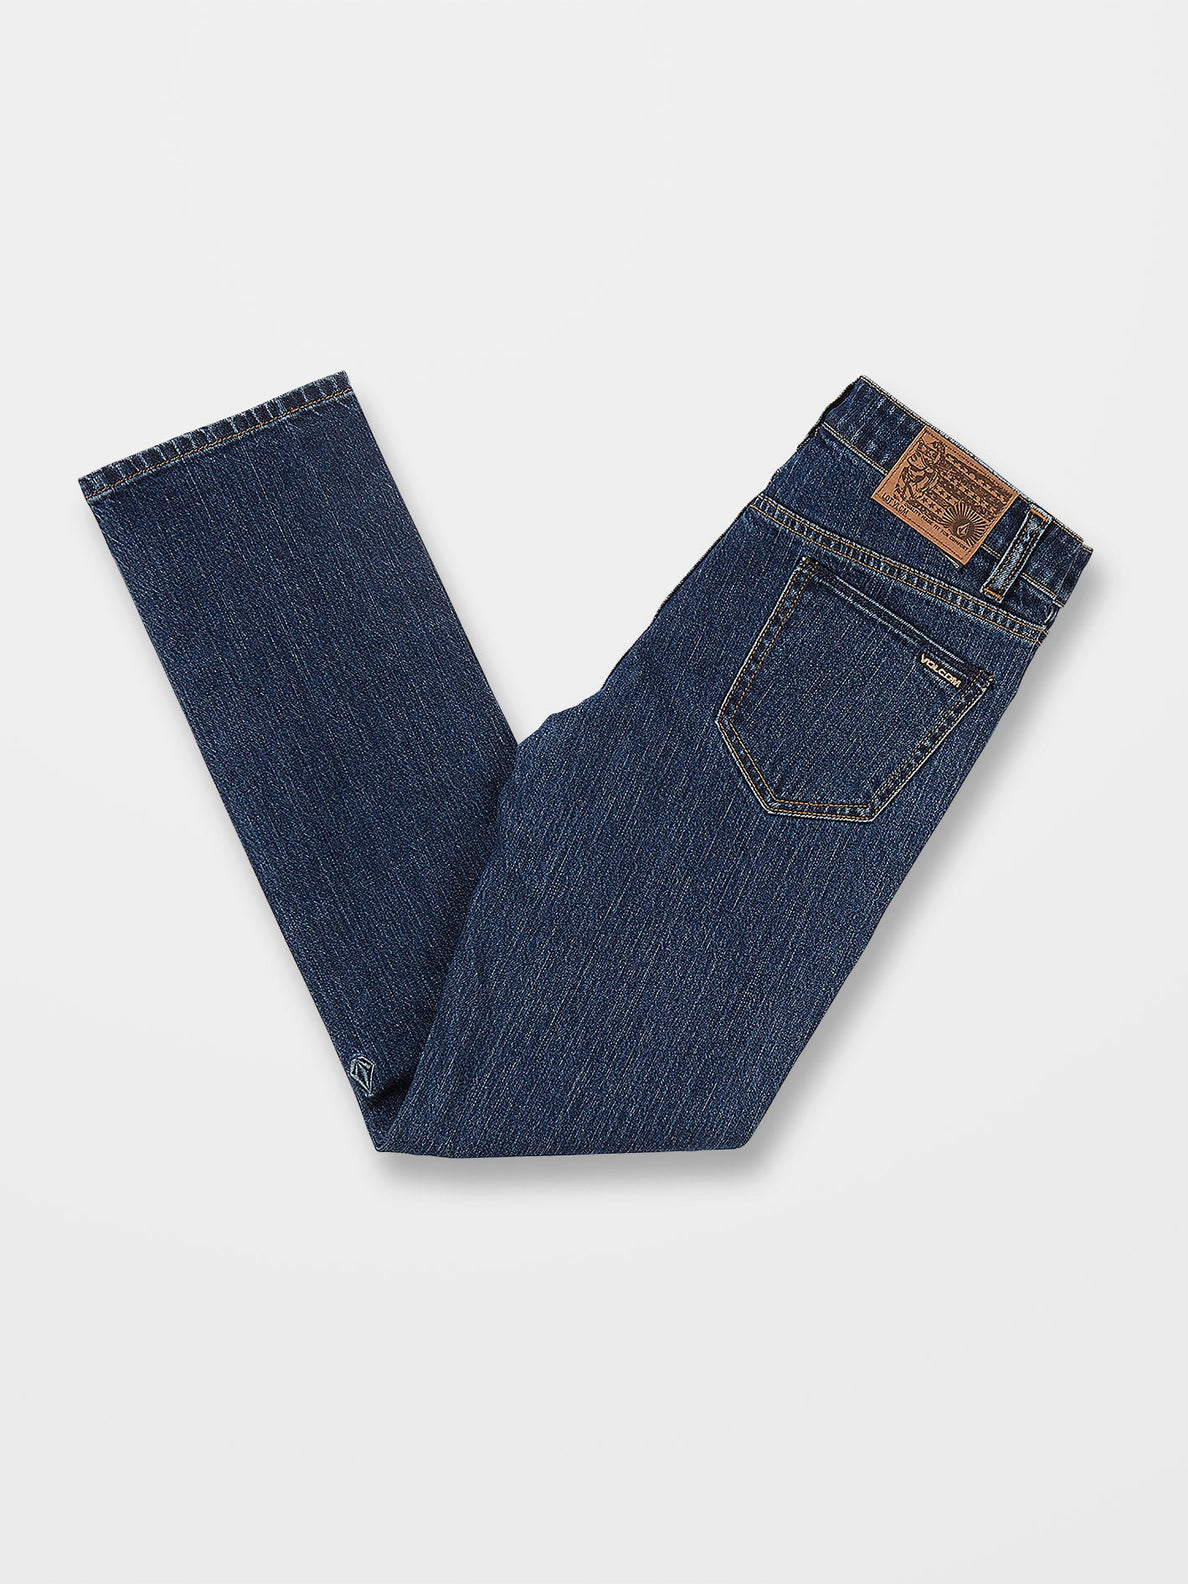 Vorta Jeans - INDIGO RIDGE WASH - (KIDS) (C1932203_IRW) [B]